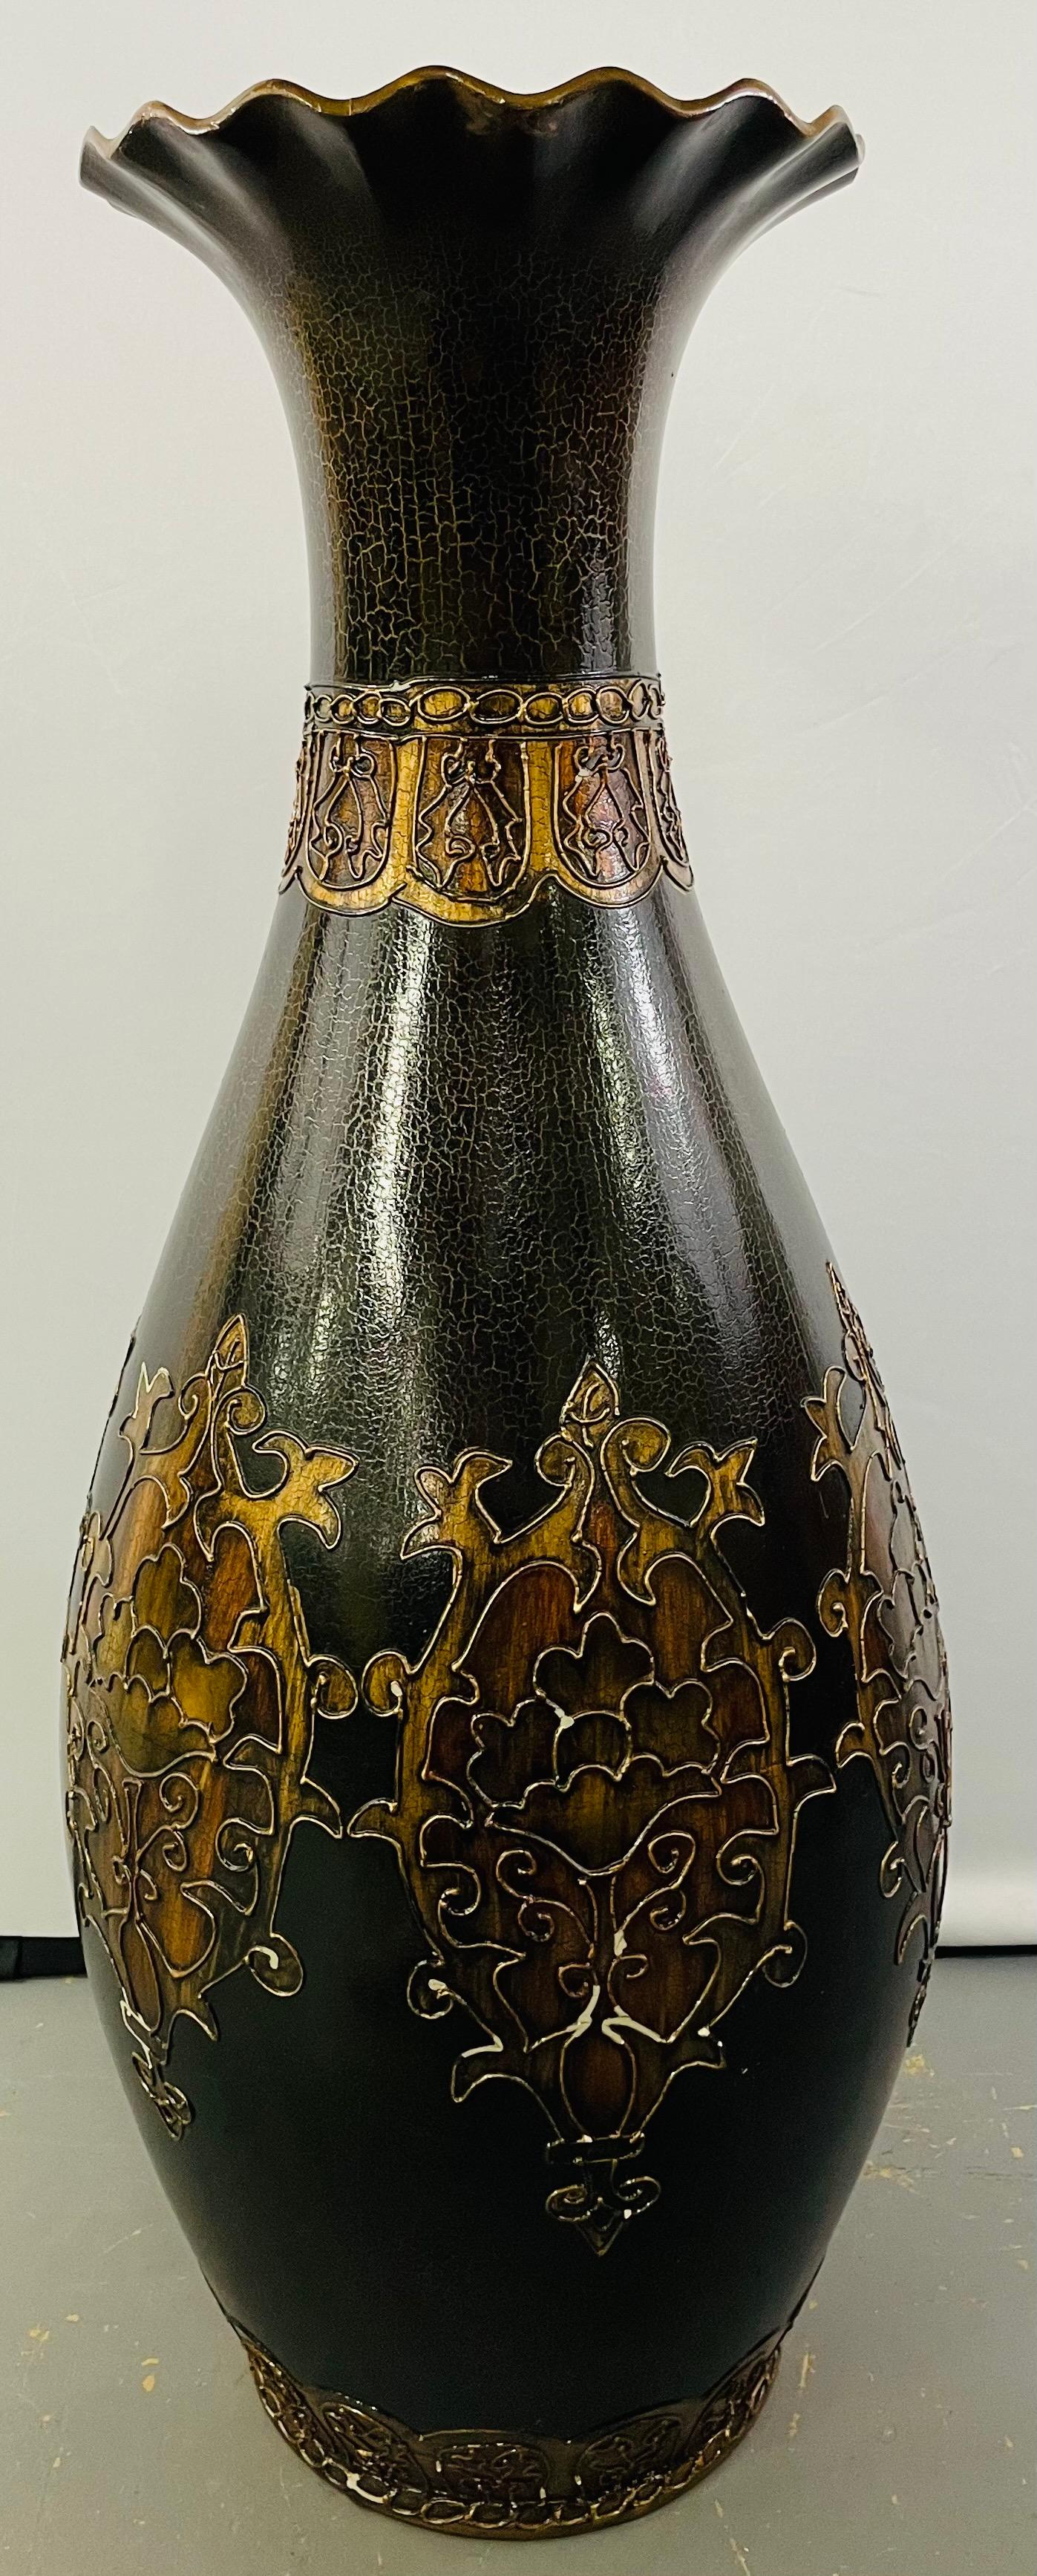 Ein monumentaler Jugendstil in Schwarz und Gold  emaillierte Vase mit feinem floralem Ätzmuster, das in einem antiken Goldton um den Körper und den Hals der Vase gemalt ist. Die Vase zeigt eine natürliche Craquelébildung auf der Farbe als Ergebnis